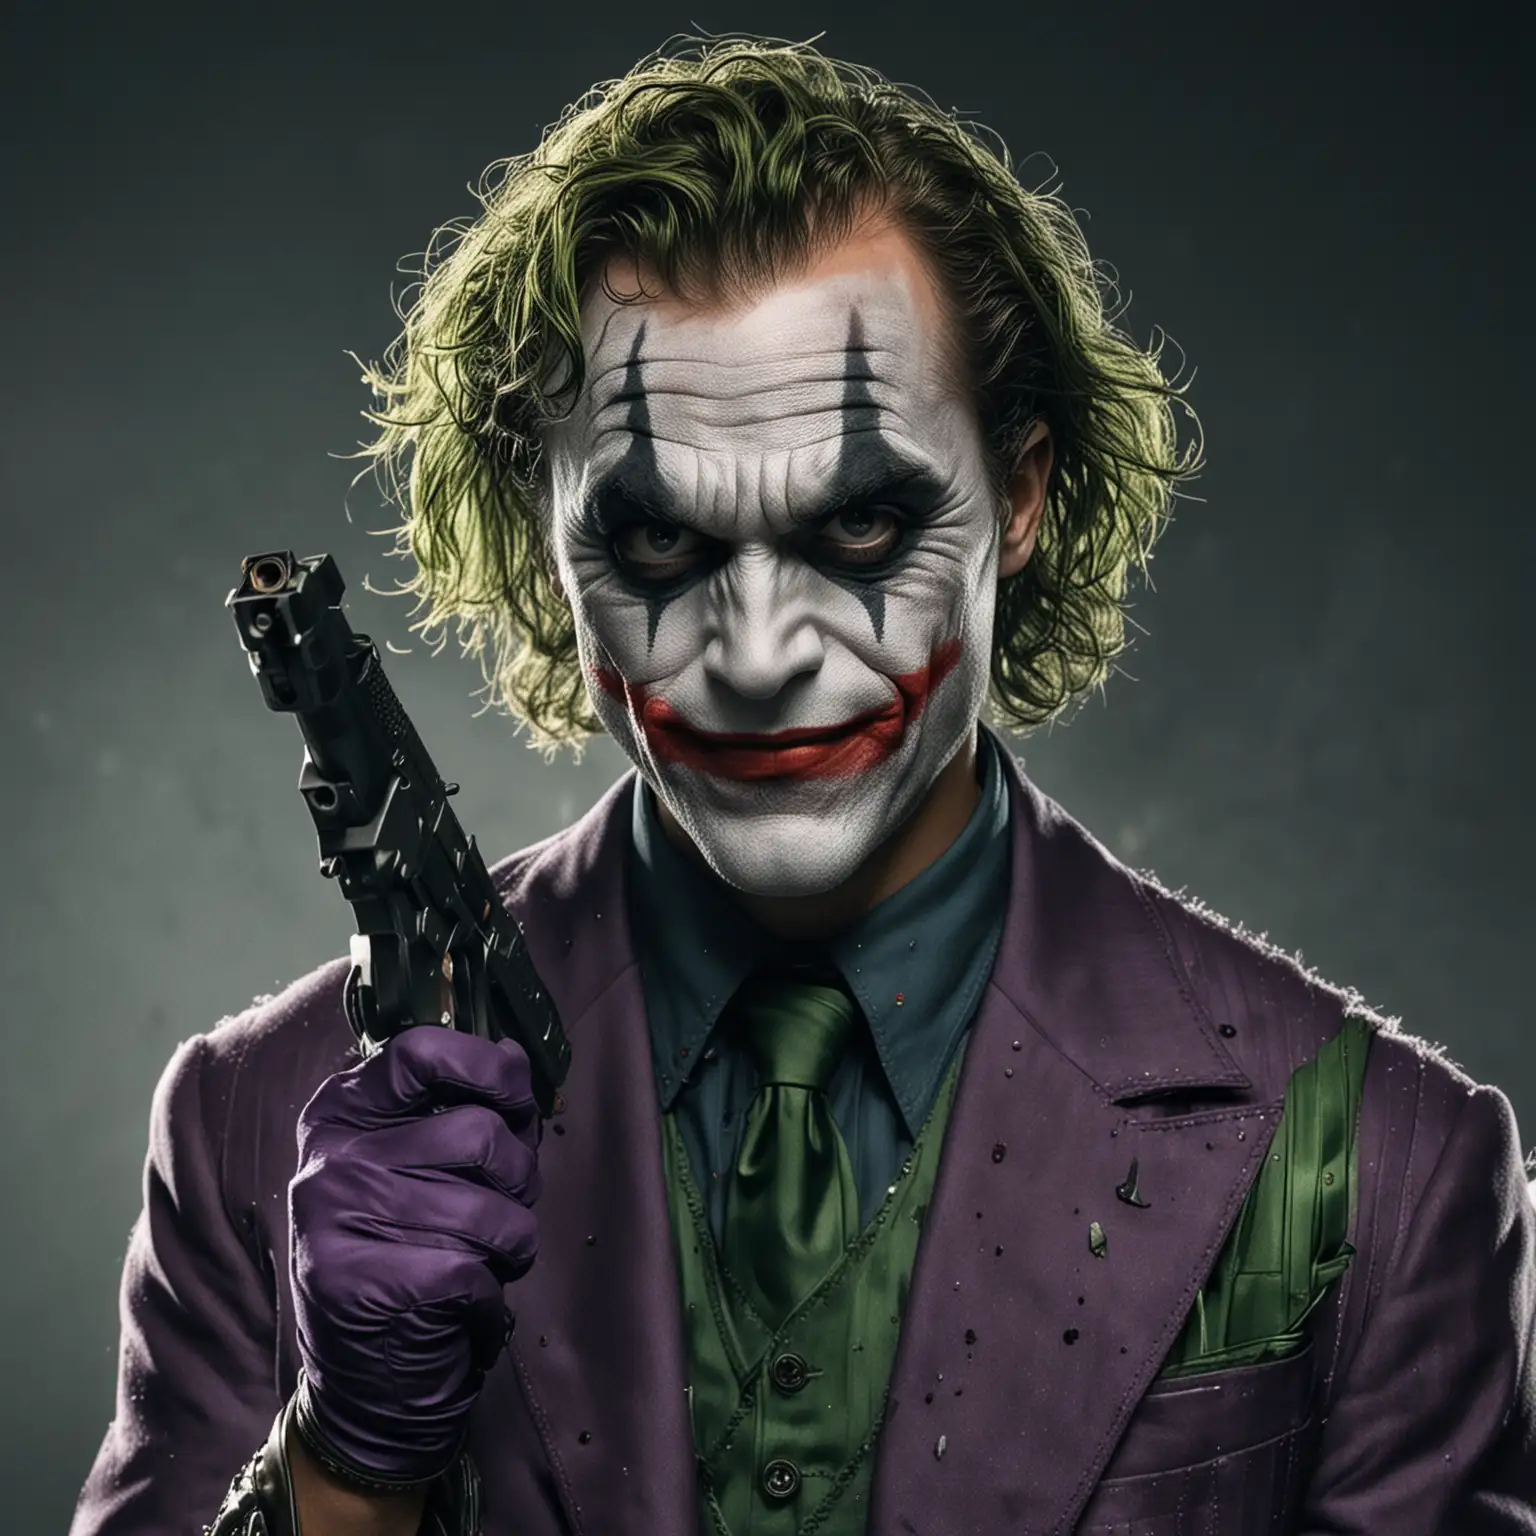 The Joker wearing weird Eclipse glasses and holding a gun